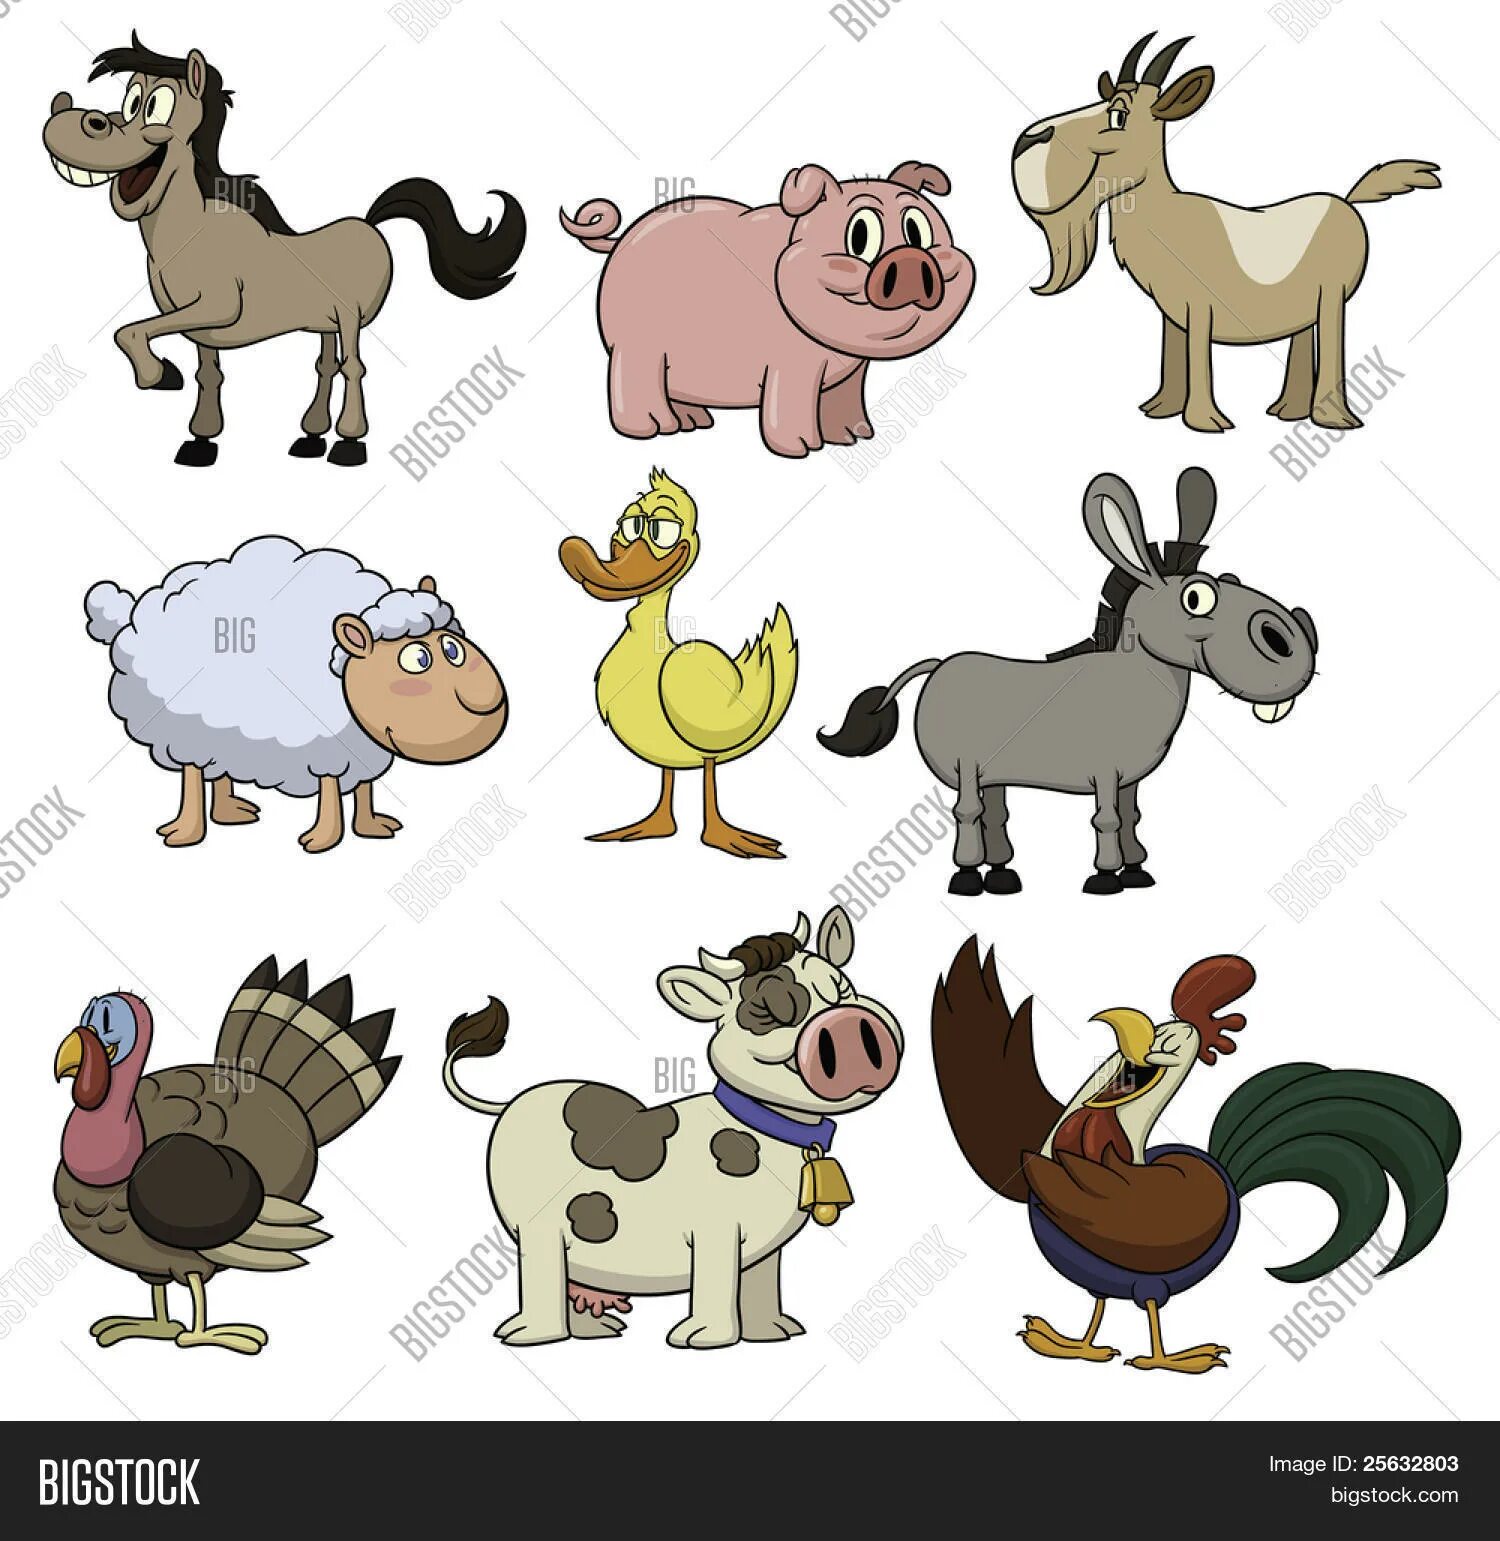 Петух корова лошадь. Изображения коровы свиньи коты собаки. Корова свинья курица. Кошка..собака..корова..коза..свинья..лошадь..овца. Корова, коза, собака, лошадь, петух, утка и овца.